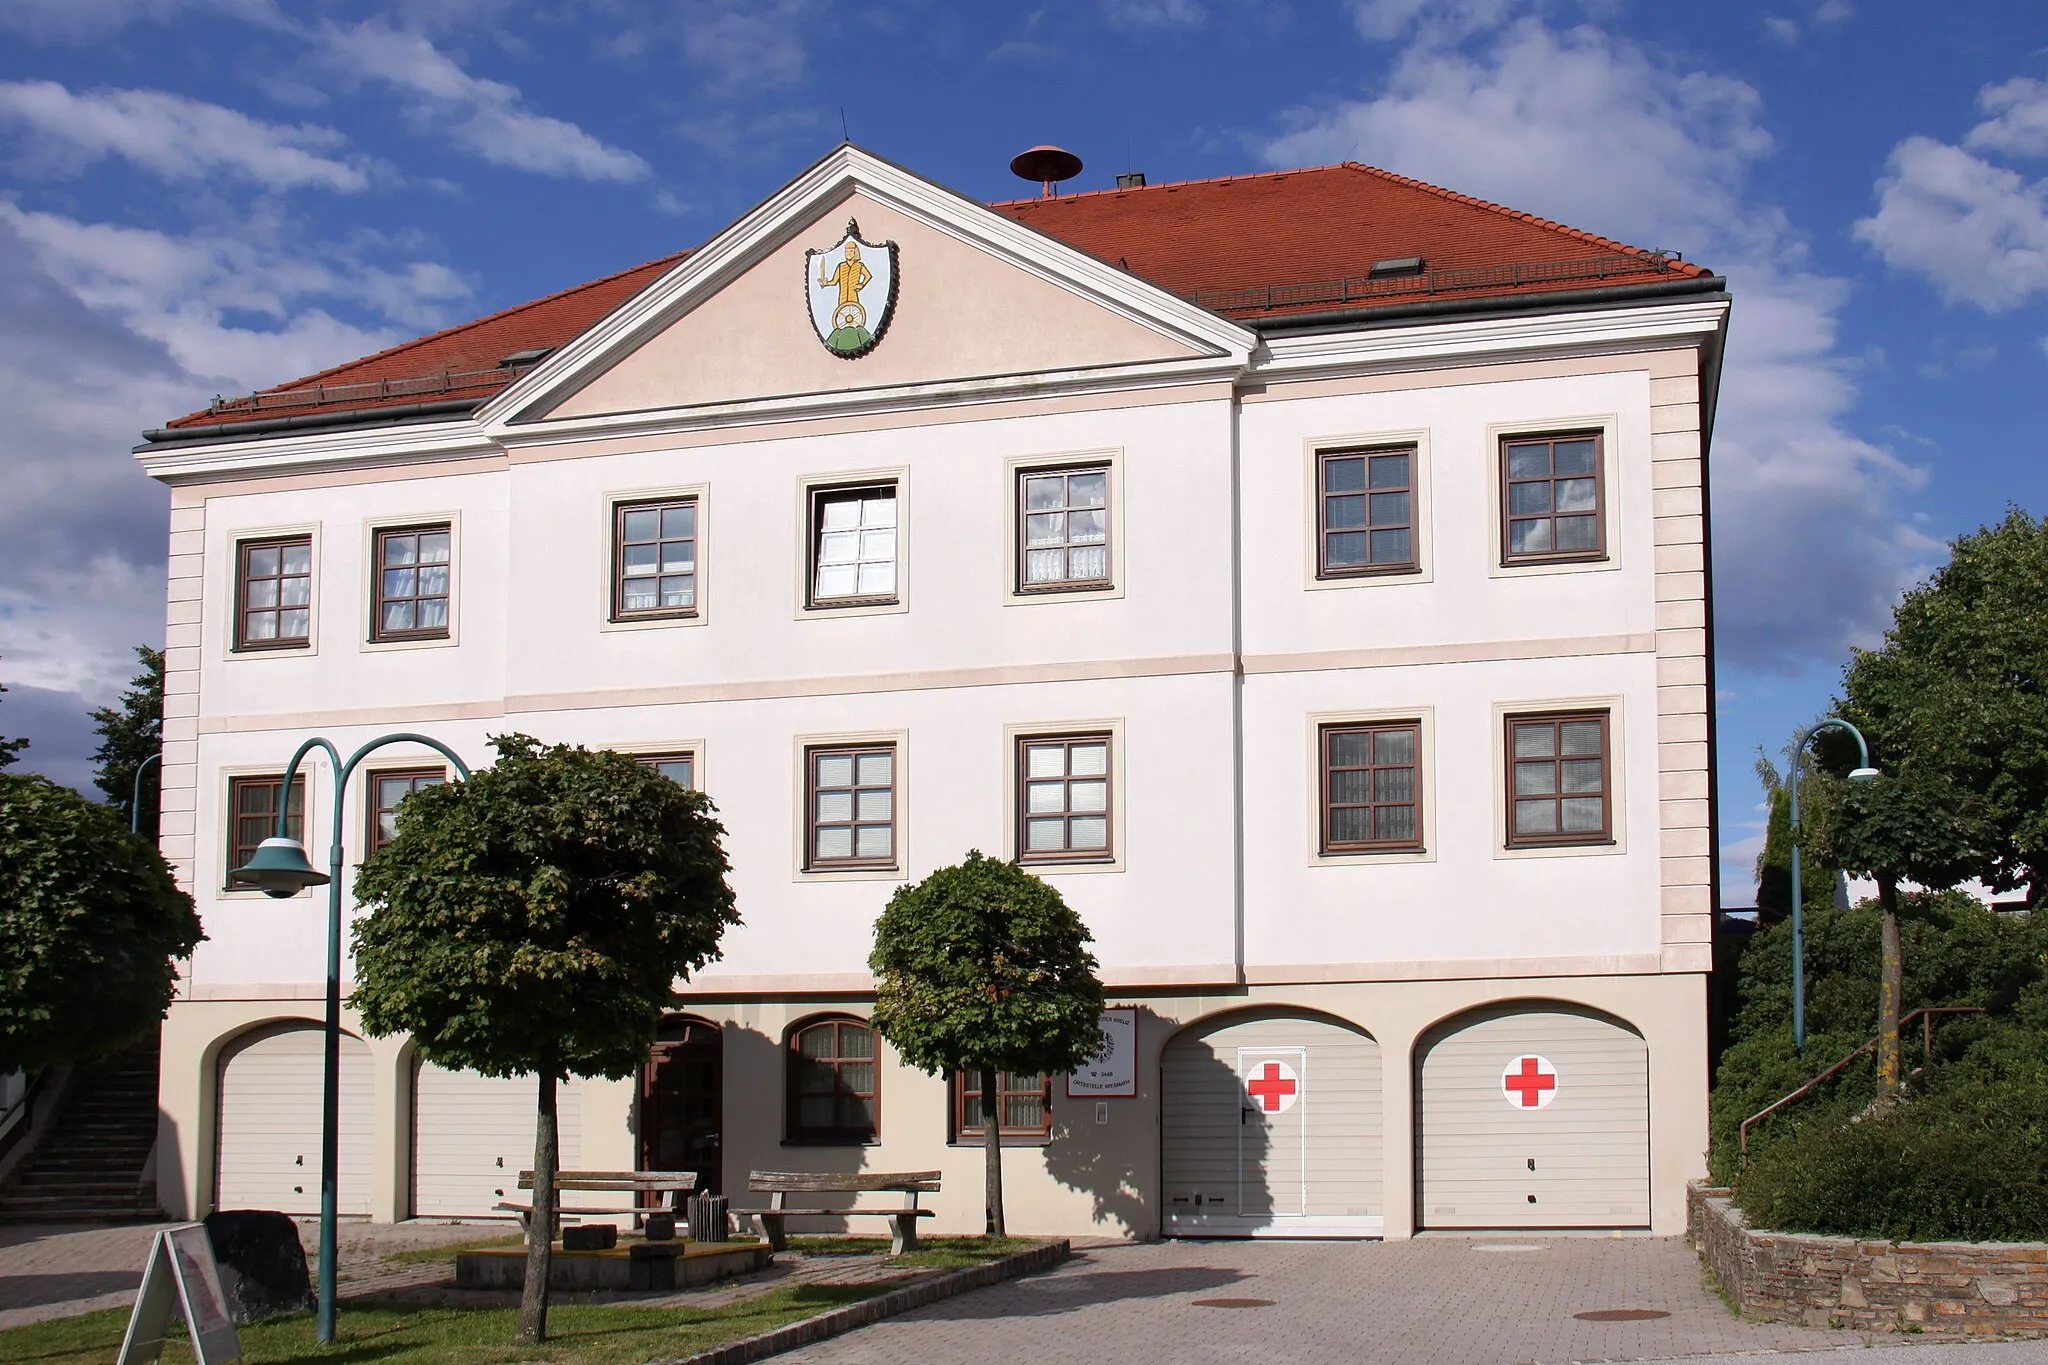 Photo showing: Municipality Wiesmath in Lower Austria. – The photo shows the municipality office of Wiesmath.